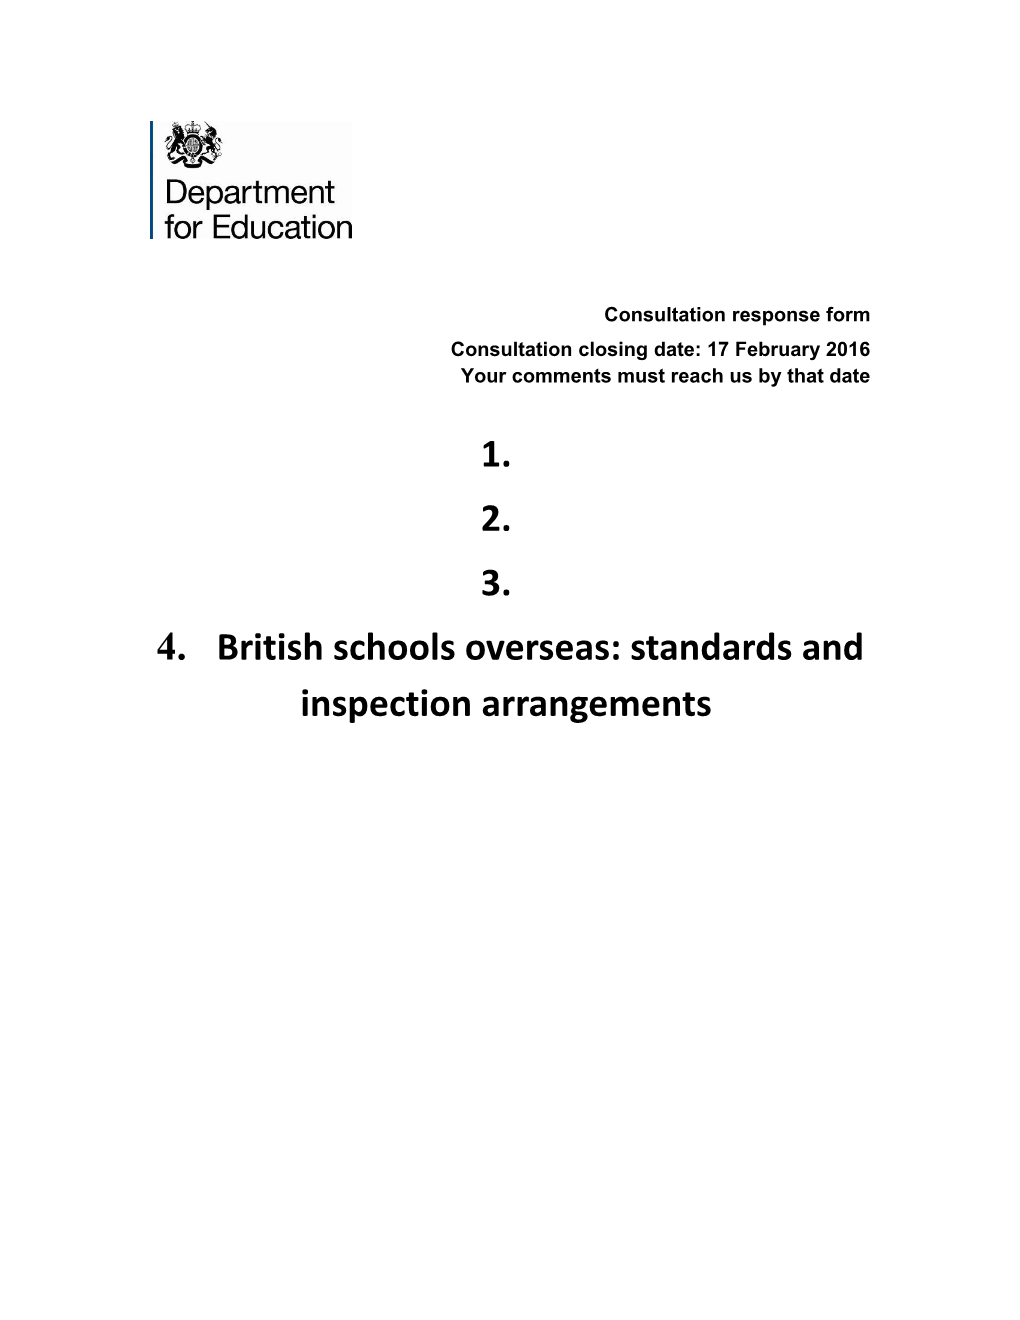 British Schools Overseas: Standards and Inspection Arrangements